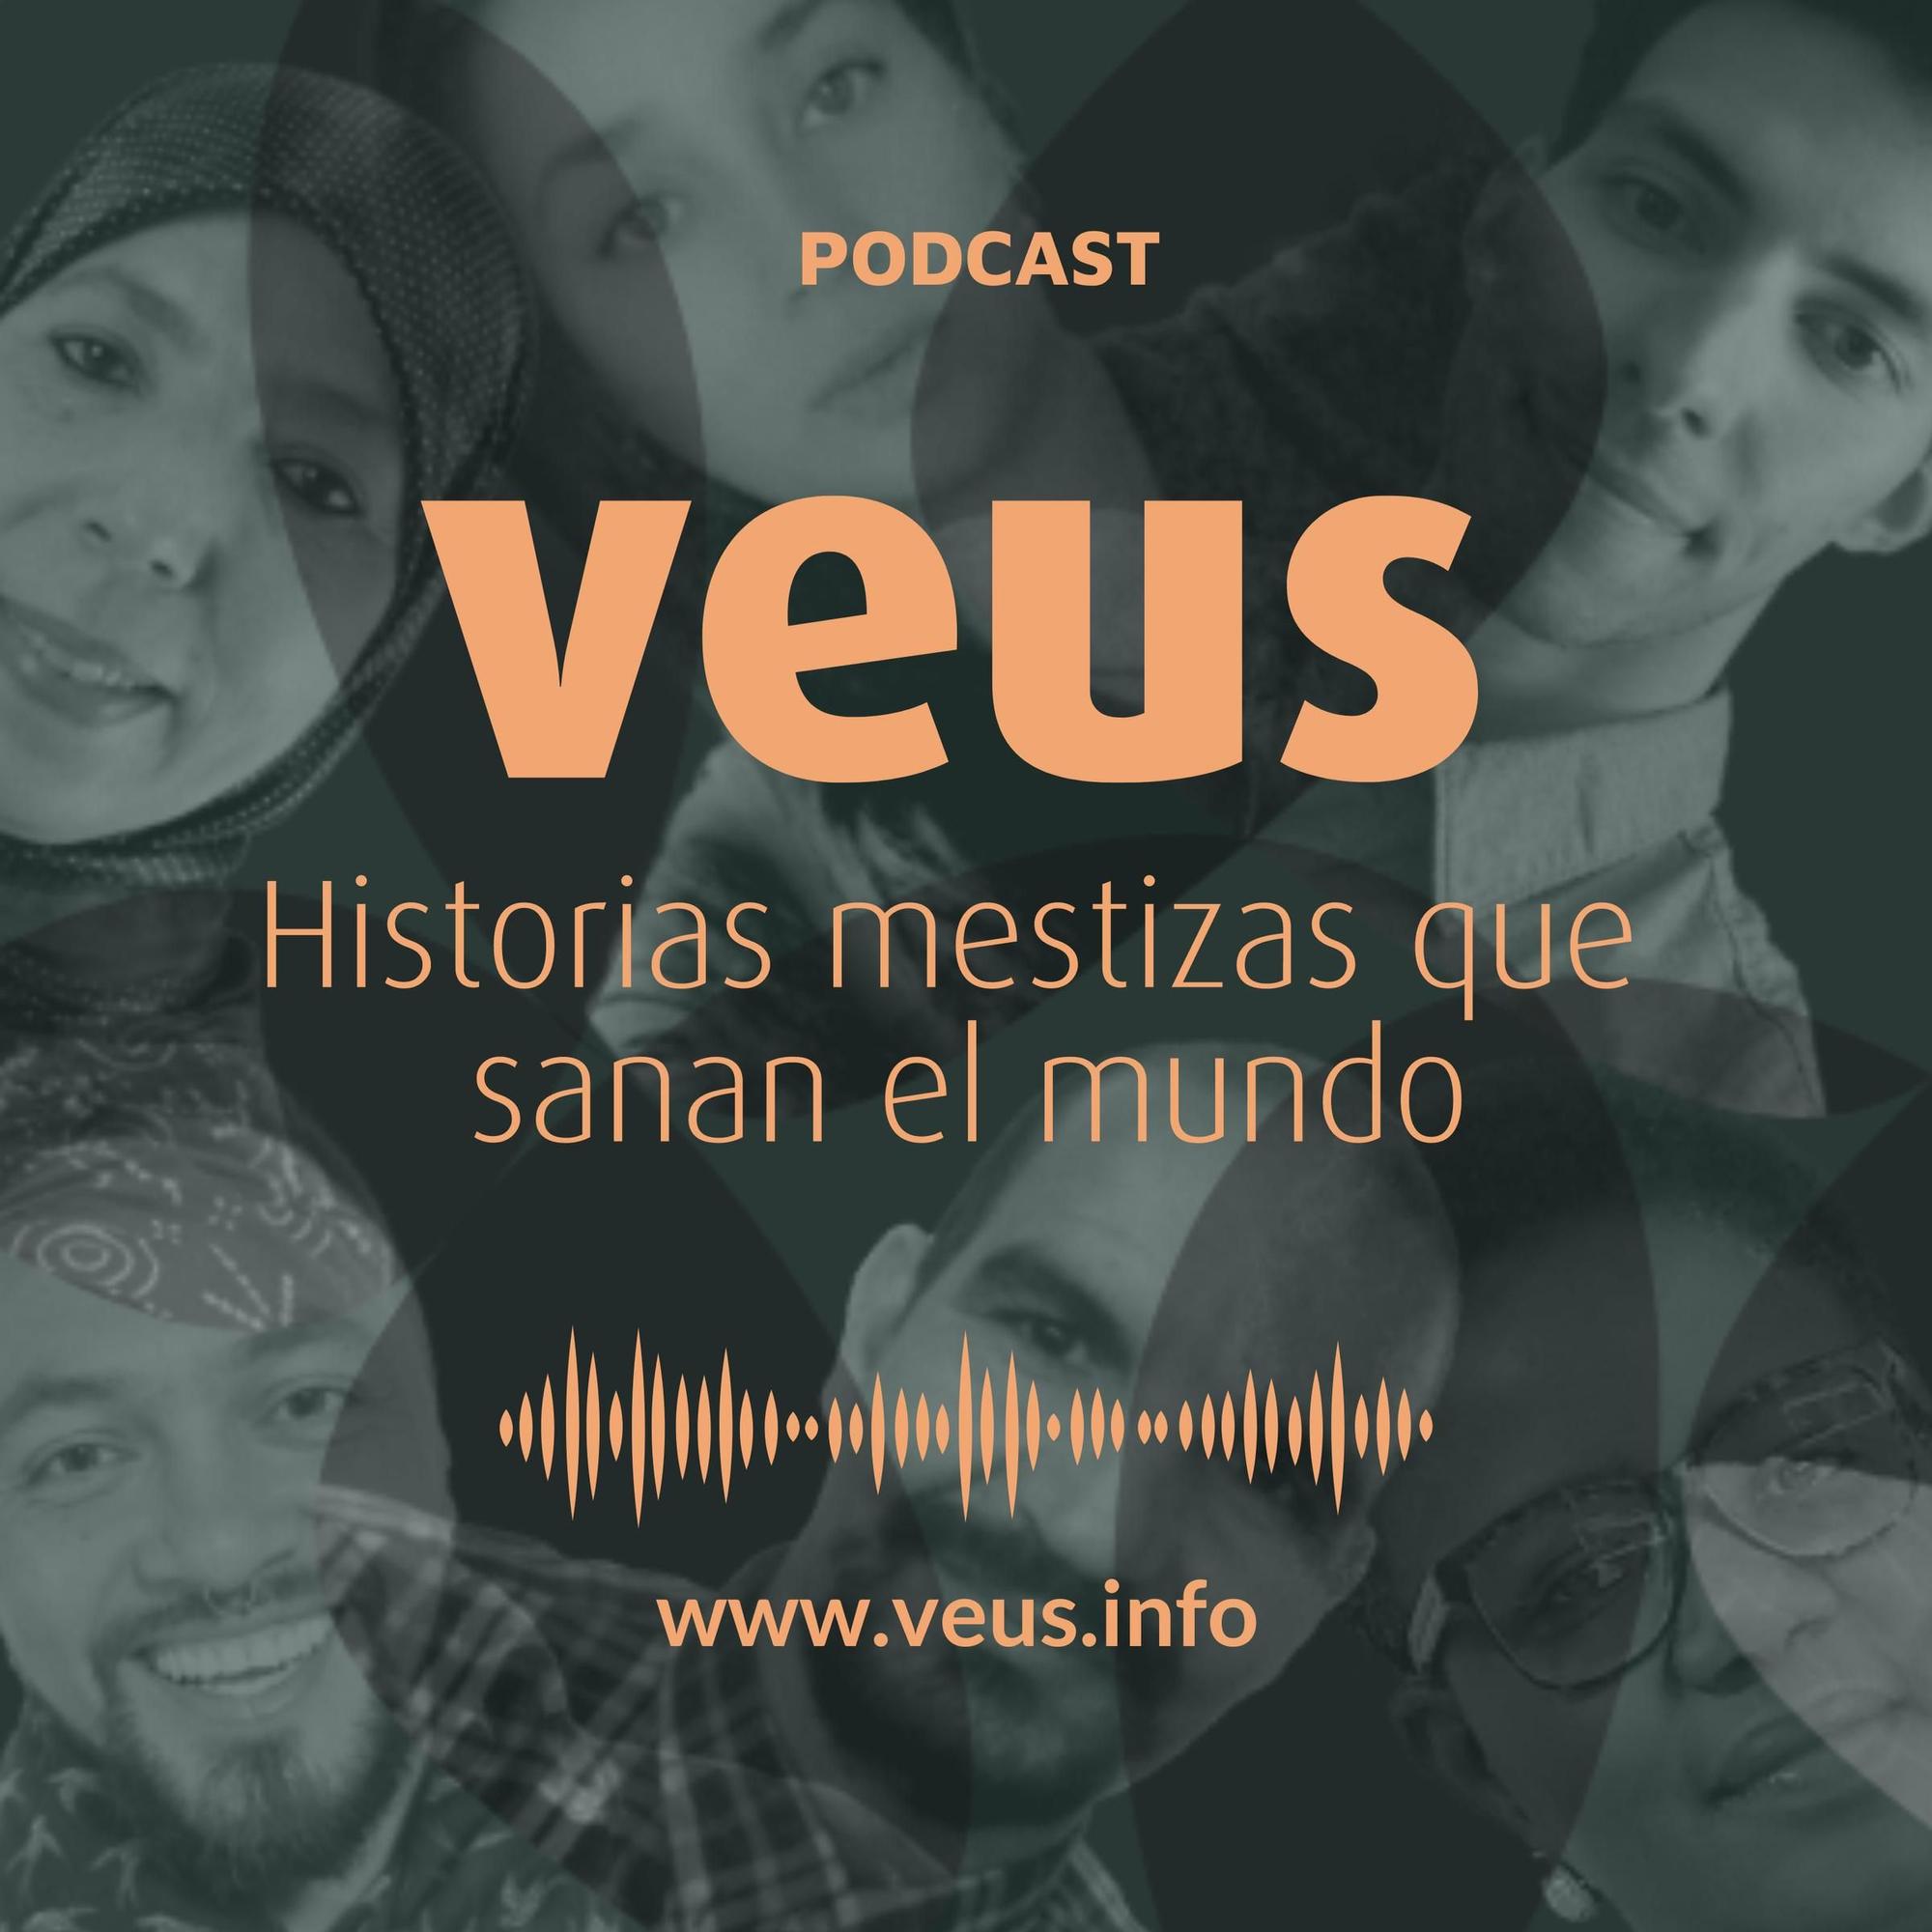 Los podcast están disponibles en la página web de VEUS y en las principales plataformas.